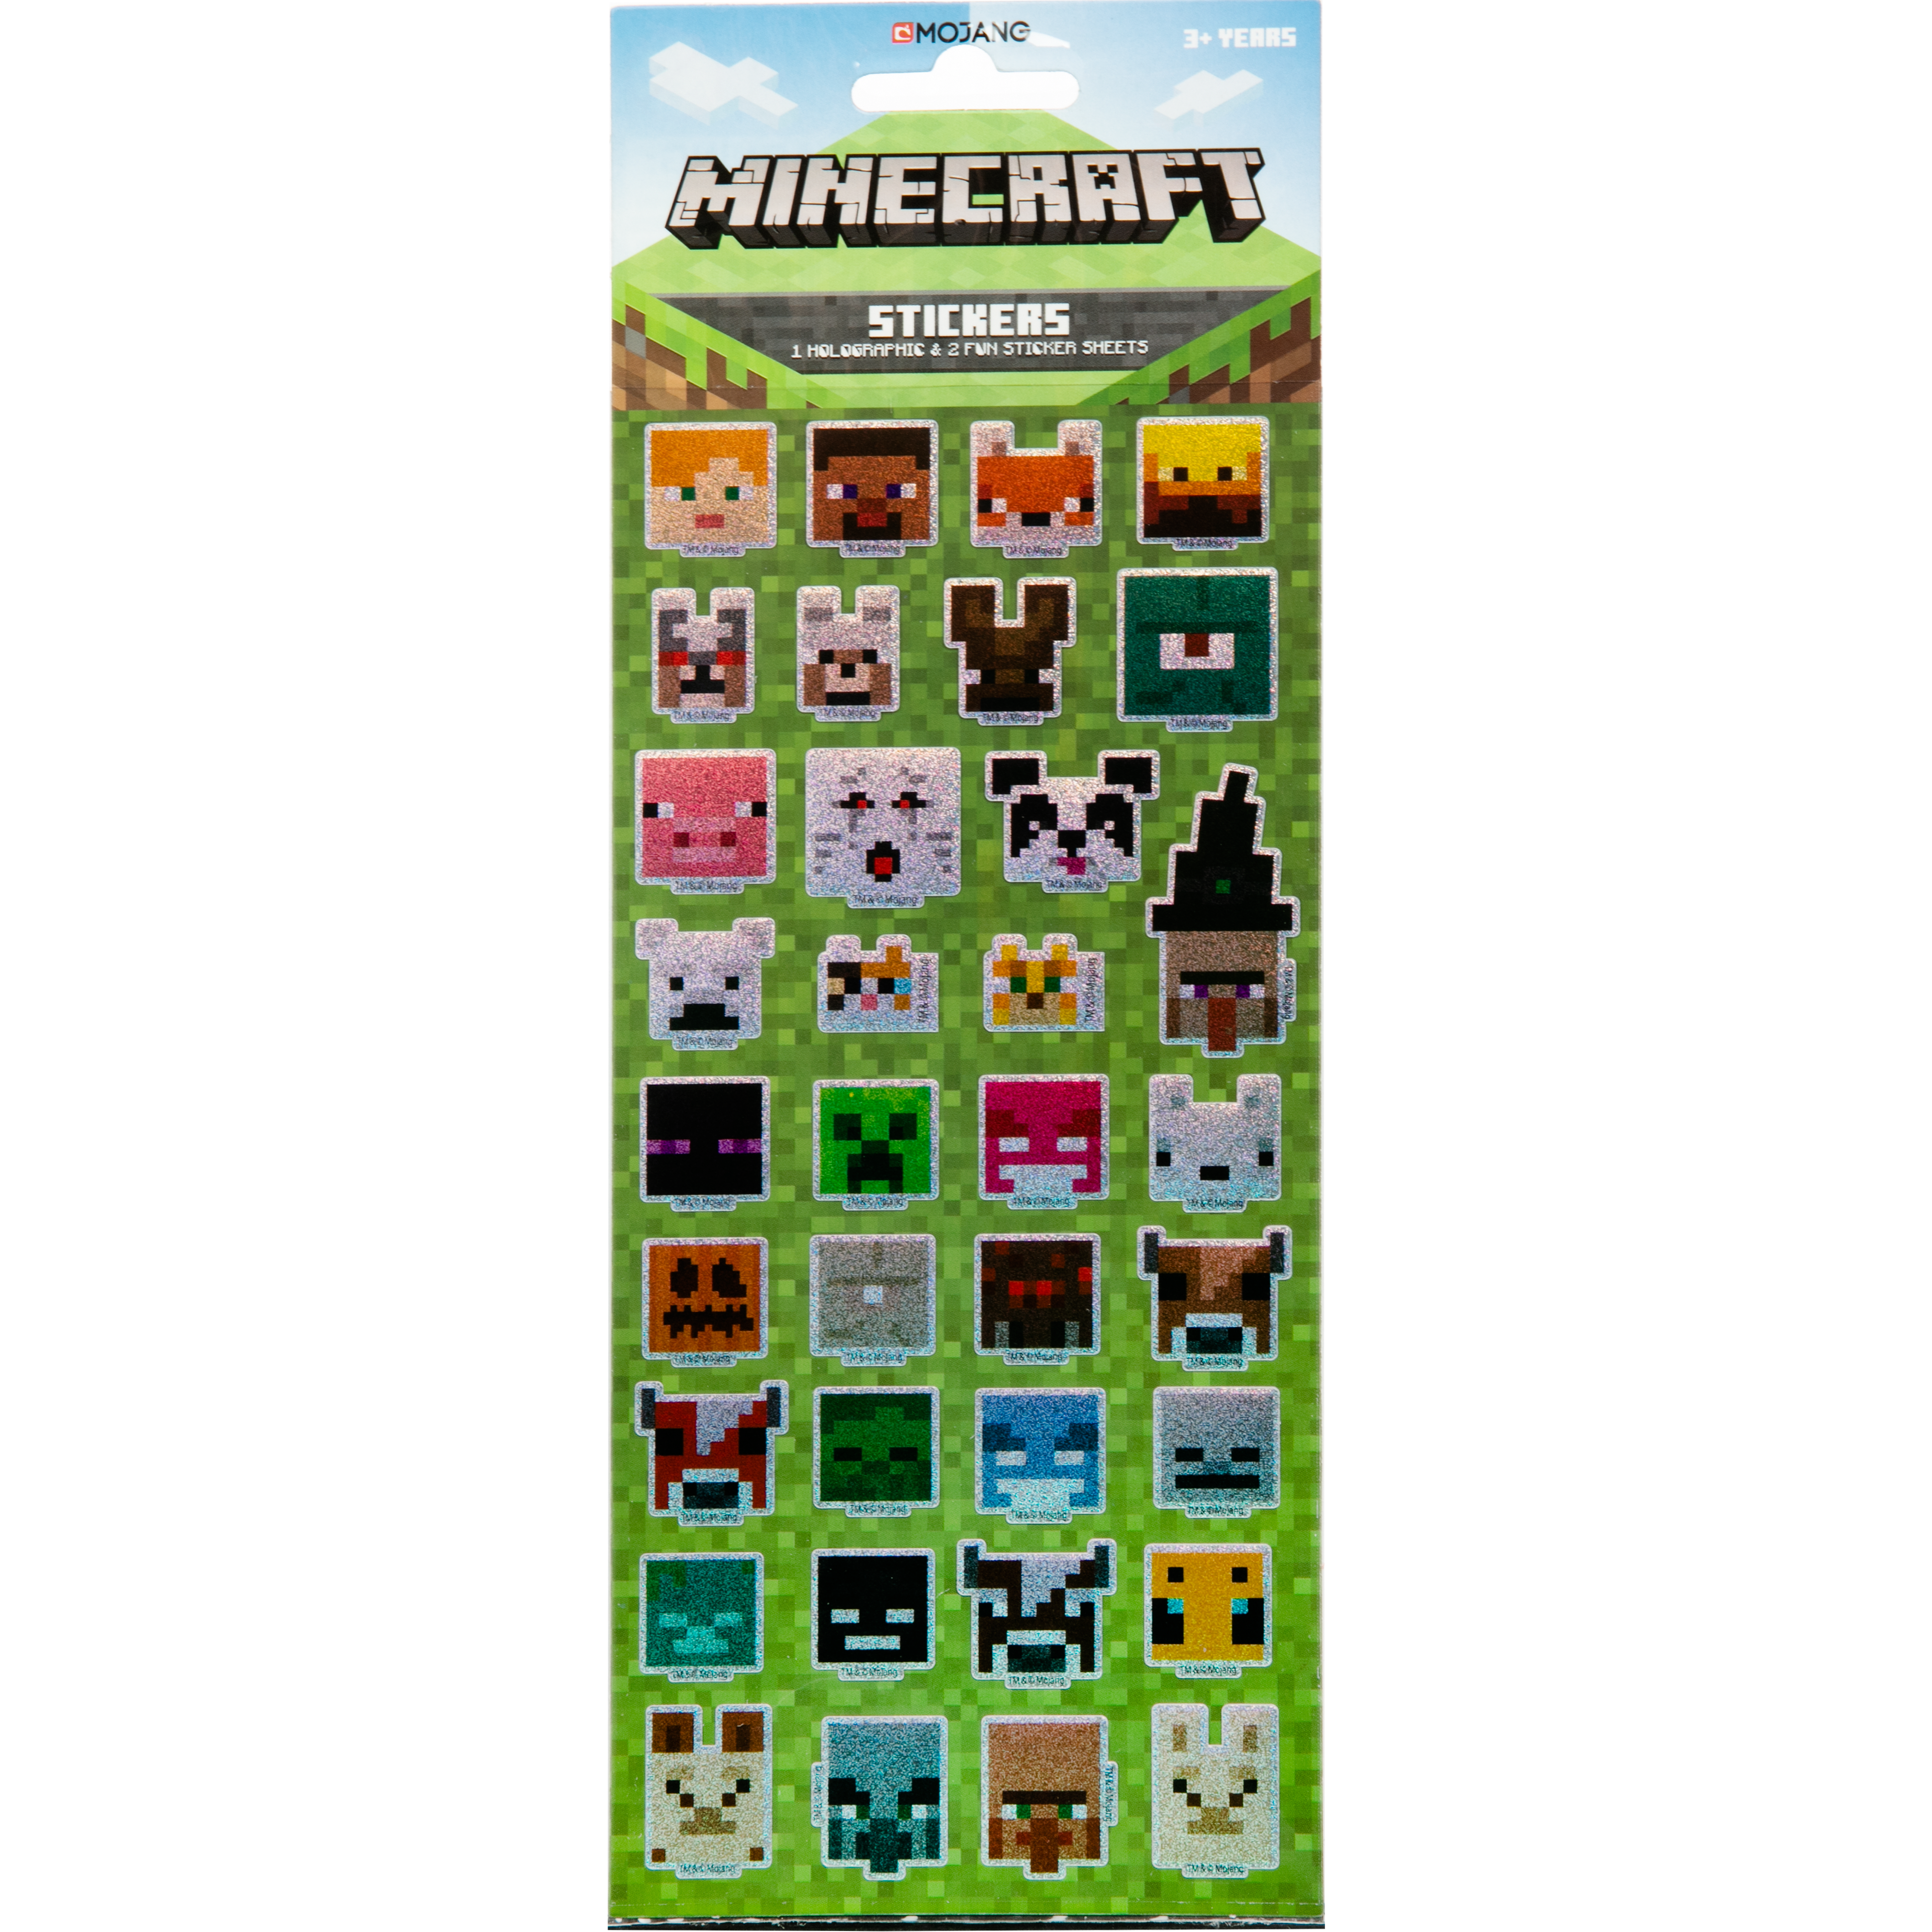 Minecraft Stickers Pack Wholesale sticker supplier 